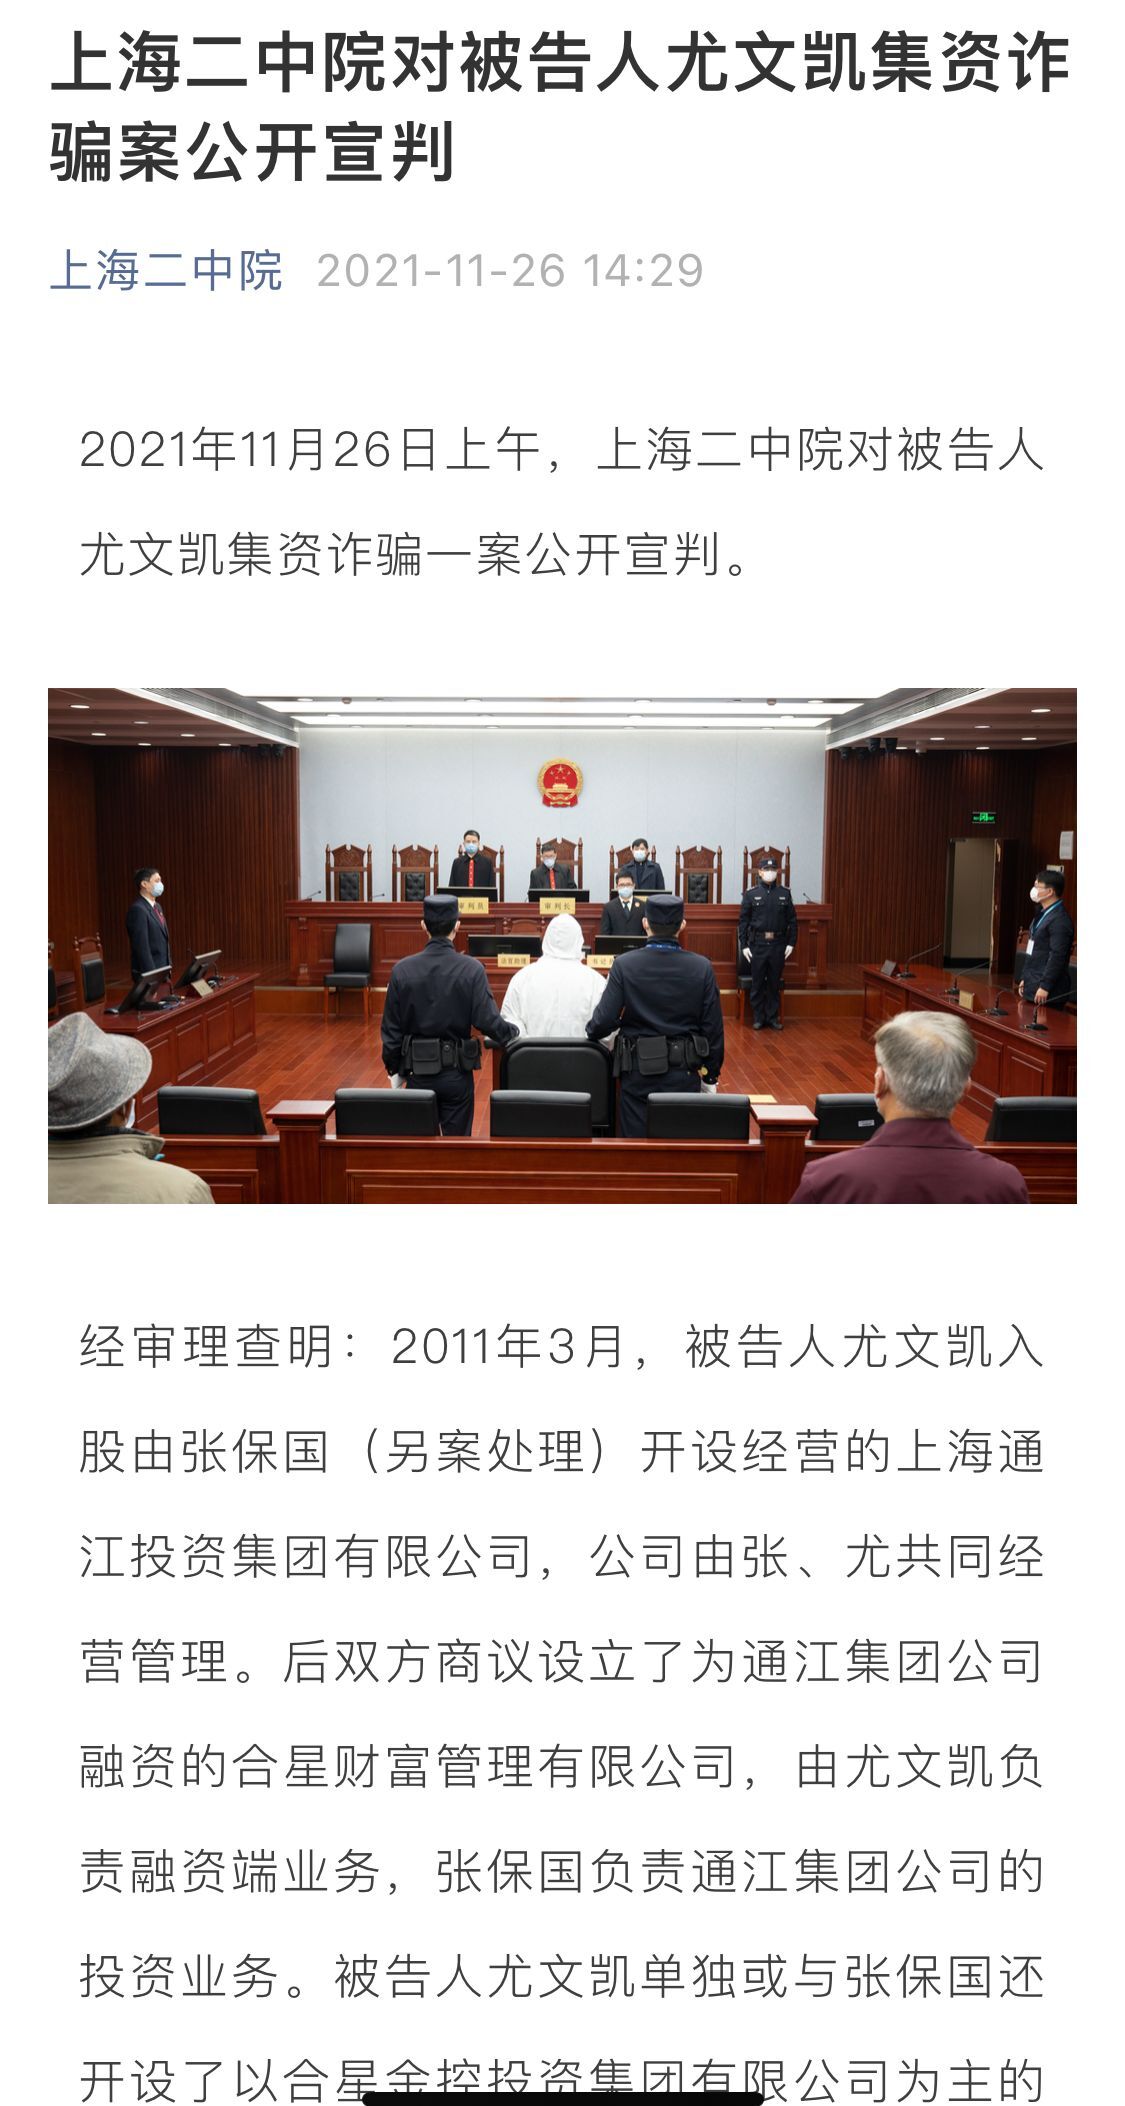 后双方商议设立了为通江集团公司融资的合星产业打点有限公司